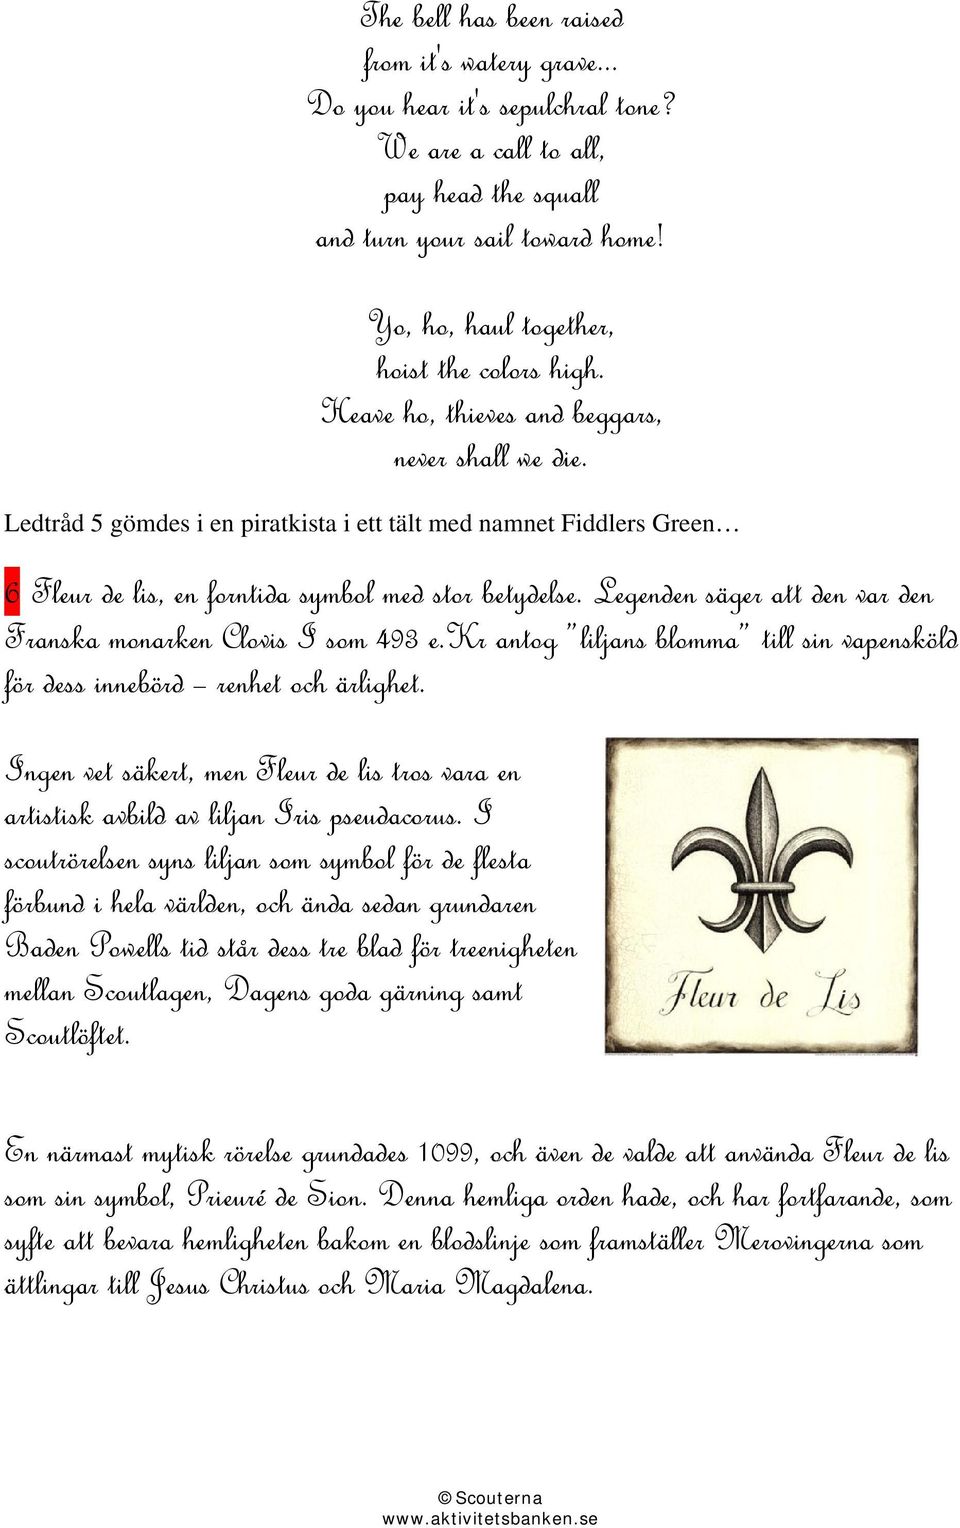 Ledtråd 5 gömdes i en piratkista i ett tält med namnet Fiddlers Green 6 Fleur de lis, en forntida symbol med stor betydelse. Legenden säger att den var den Franska monarken Clovis I som 493 e.